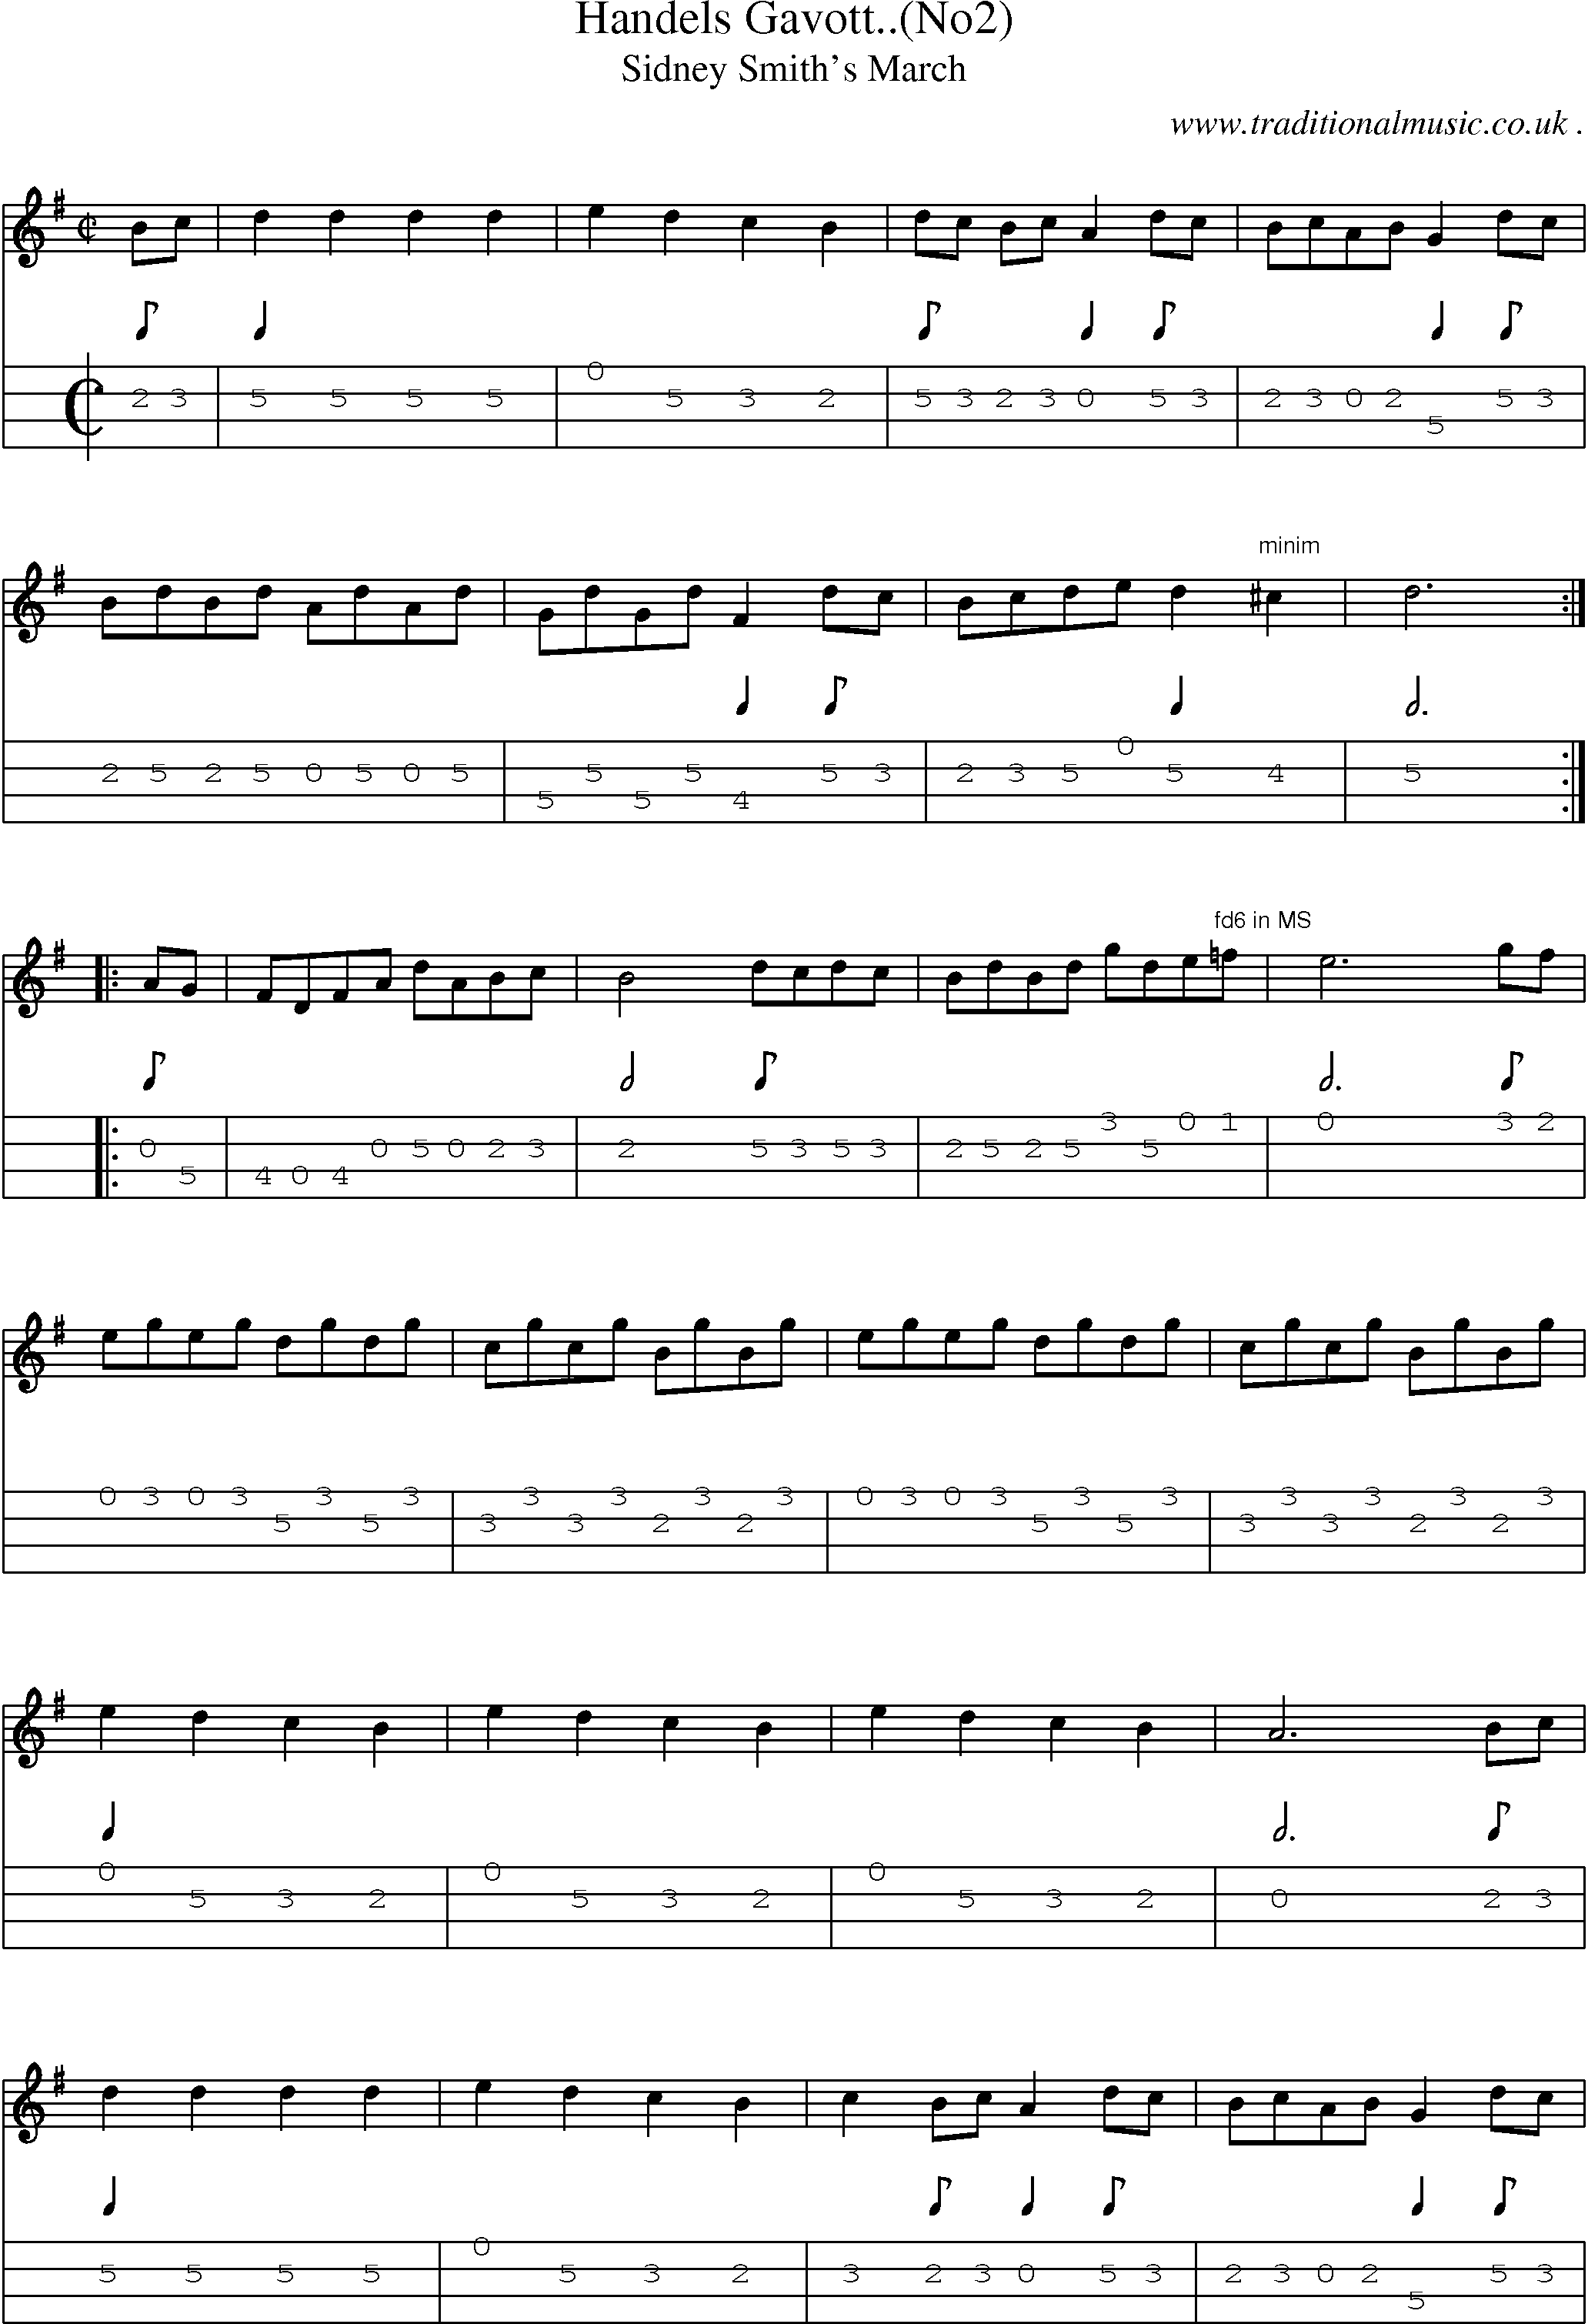 Sheet-Music and Mandolin Tabs for Handels Gavott(no2)